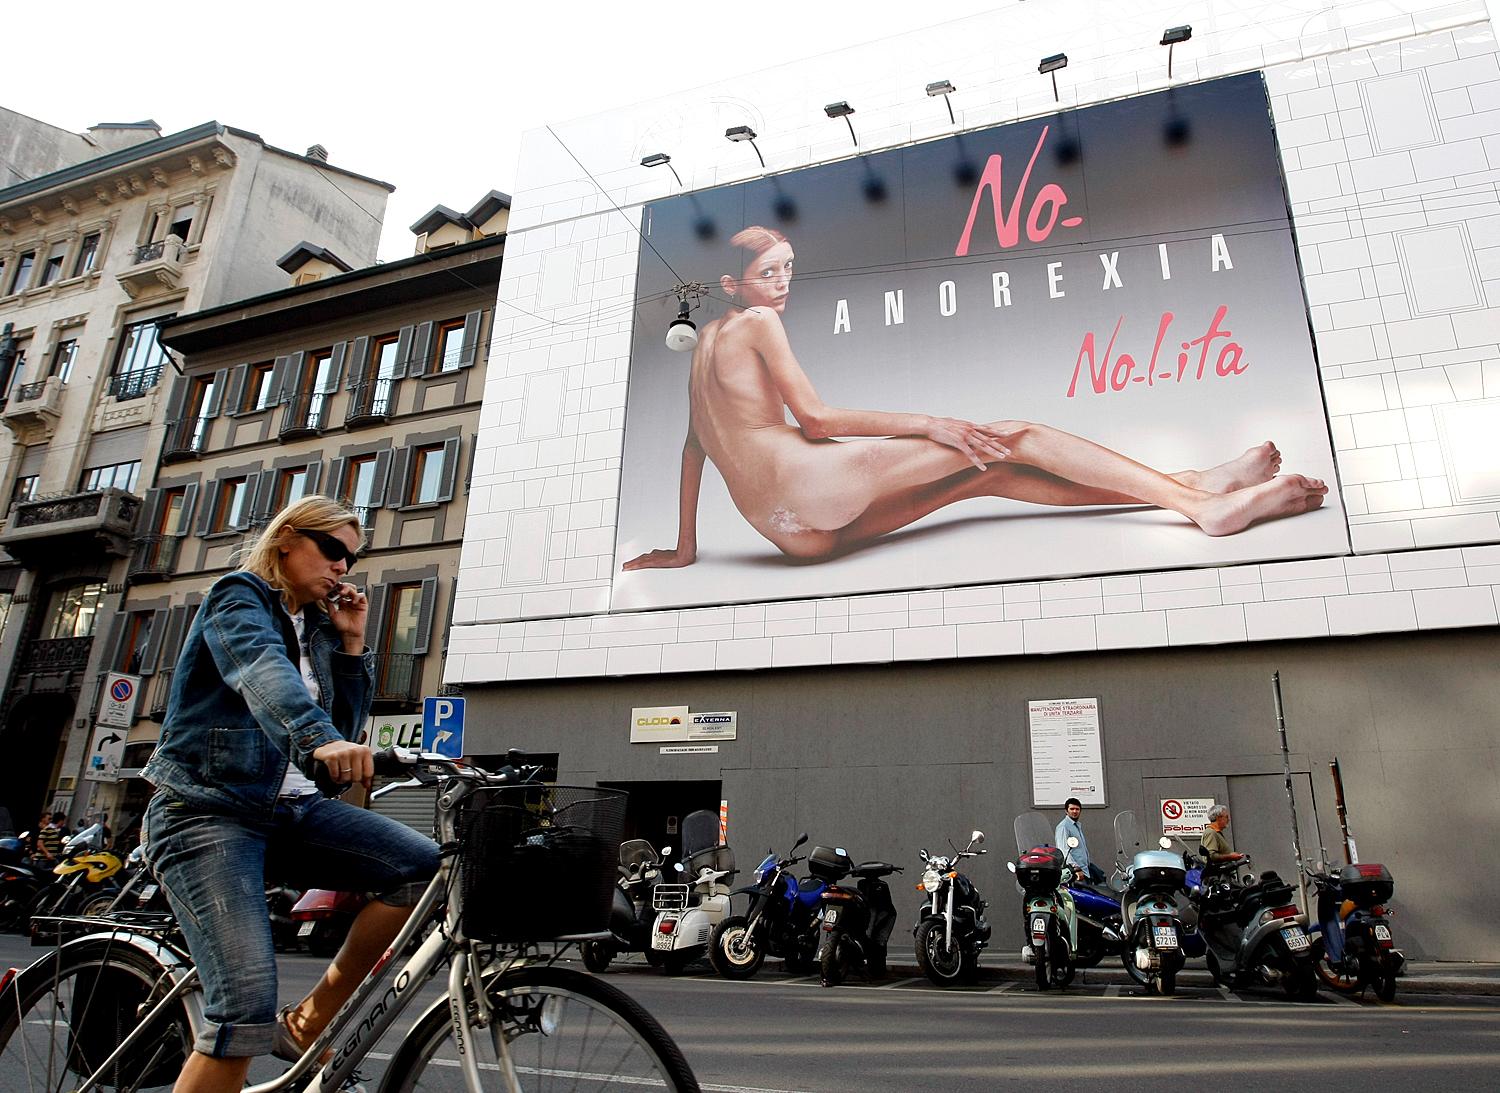 Isabelle Caro modell 2007-ben lett egy anorexiaellenes kampány arca, melyben végre felvállalhatta magát és utolsó éveit arra áldozhatta, hogy másokat megóvjon attól a betegségtől, mely tönkretette az életét. Caro 2010-ben öngyilkos lett